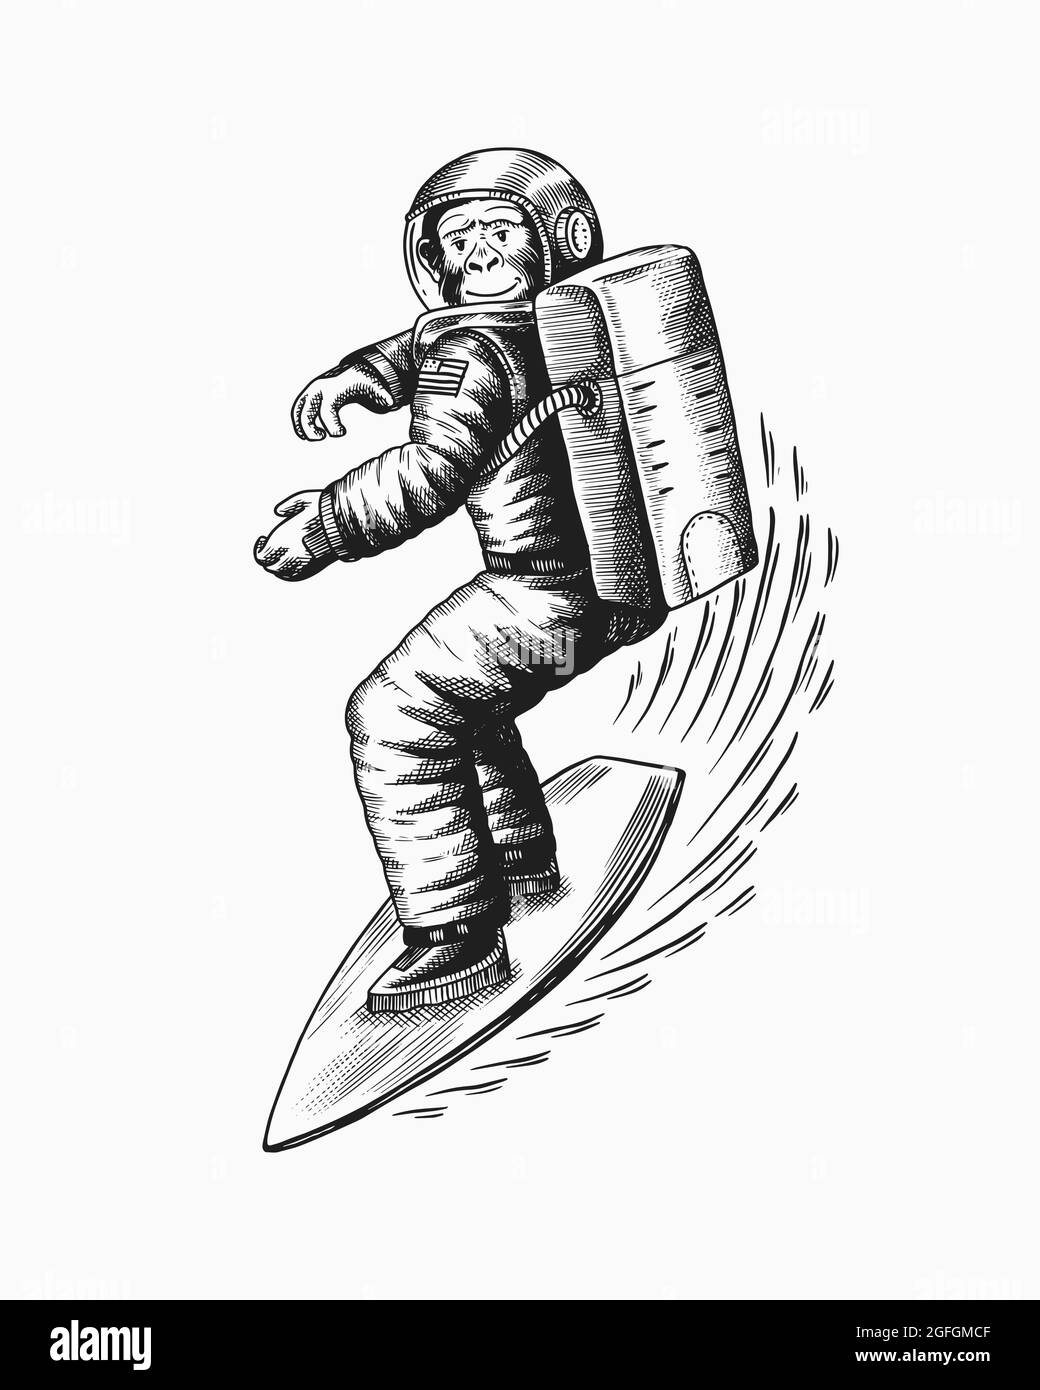 L'astronaute Monkey fait un surf... Chimpanzee Spaceman surfrider. Caractère cosmonaute. Animal à la mode. Ancienne ligne d'esquisse monochrome tracée à la main Illustration de Vecteur